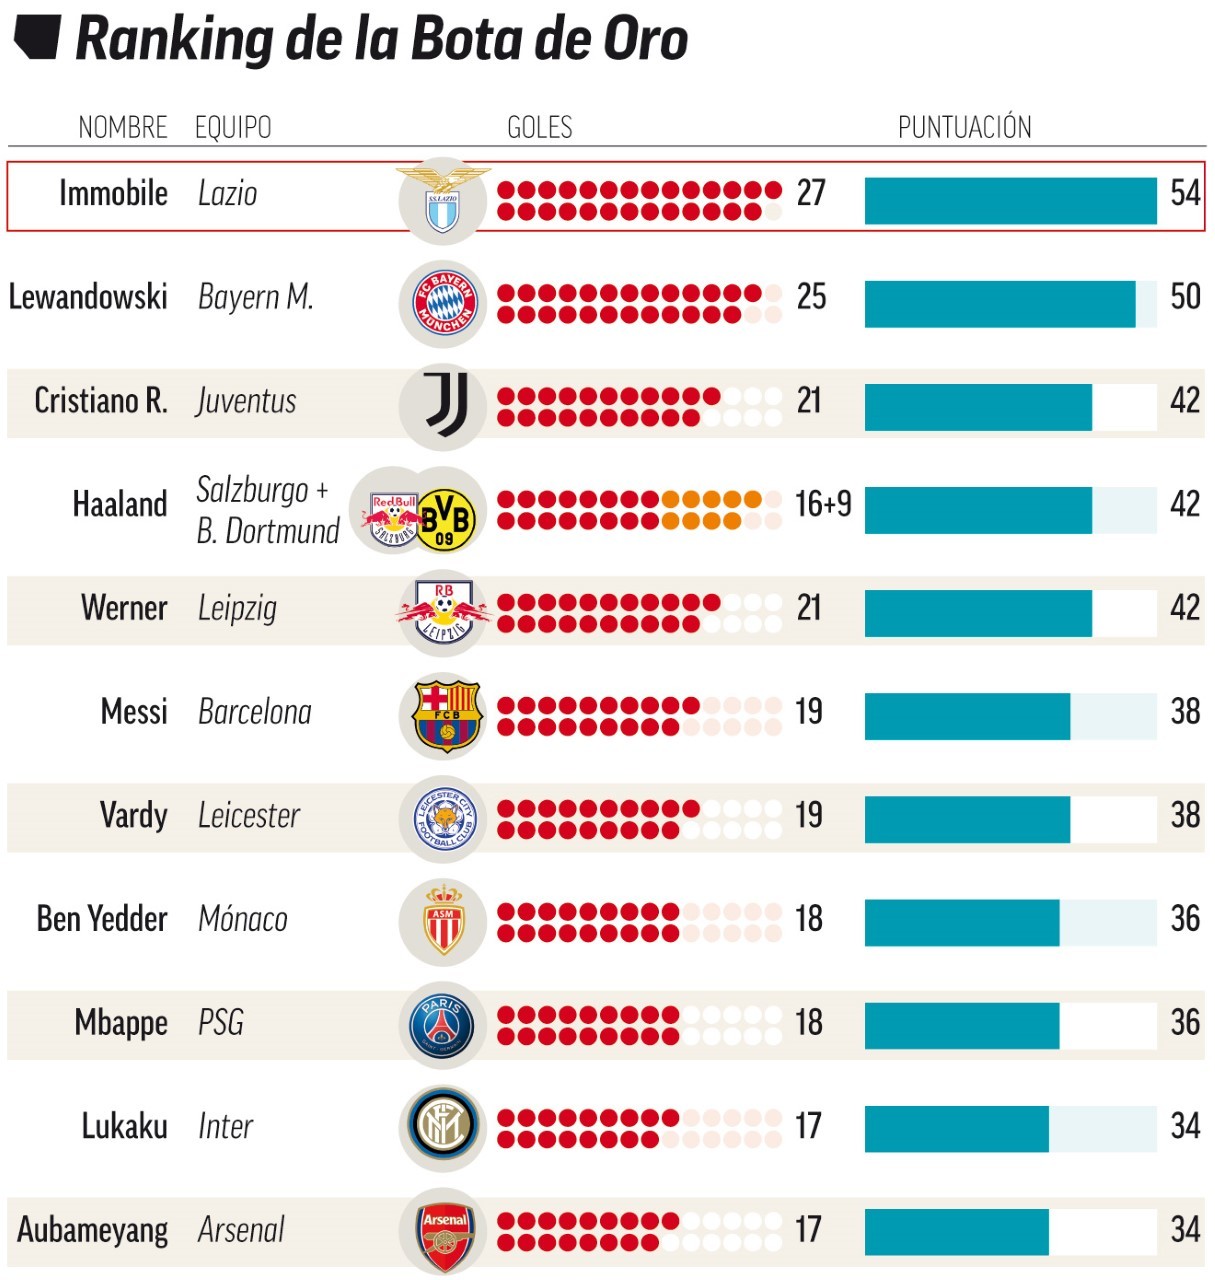 Peringkat top skor seluruh kompetisi liga domestik sepak bola di Eropa. sumber: Marca